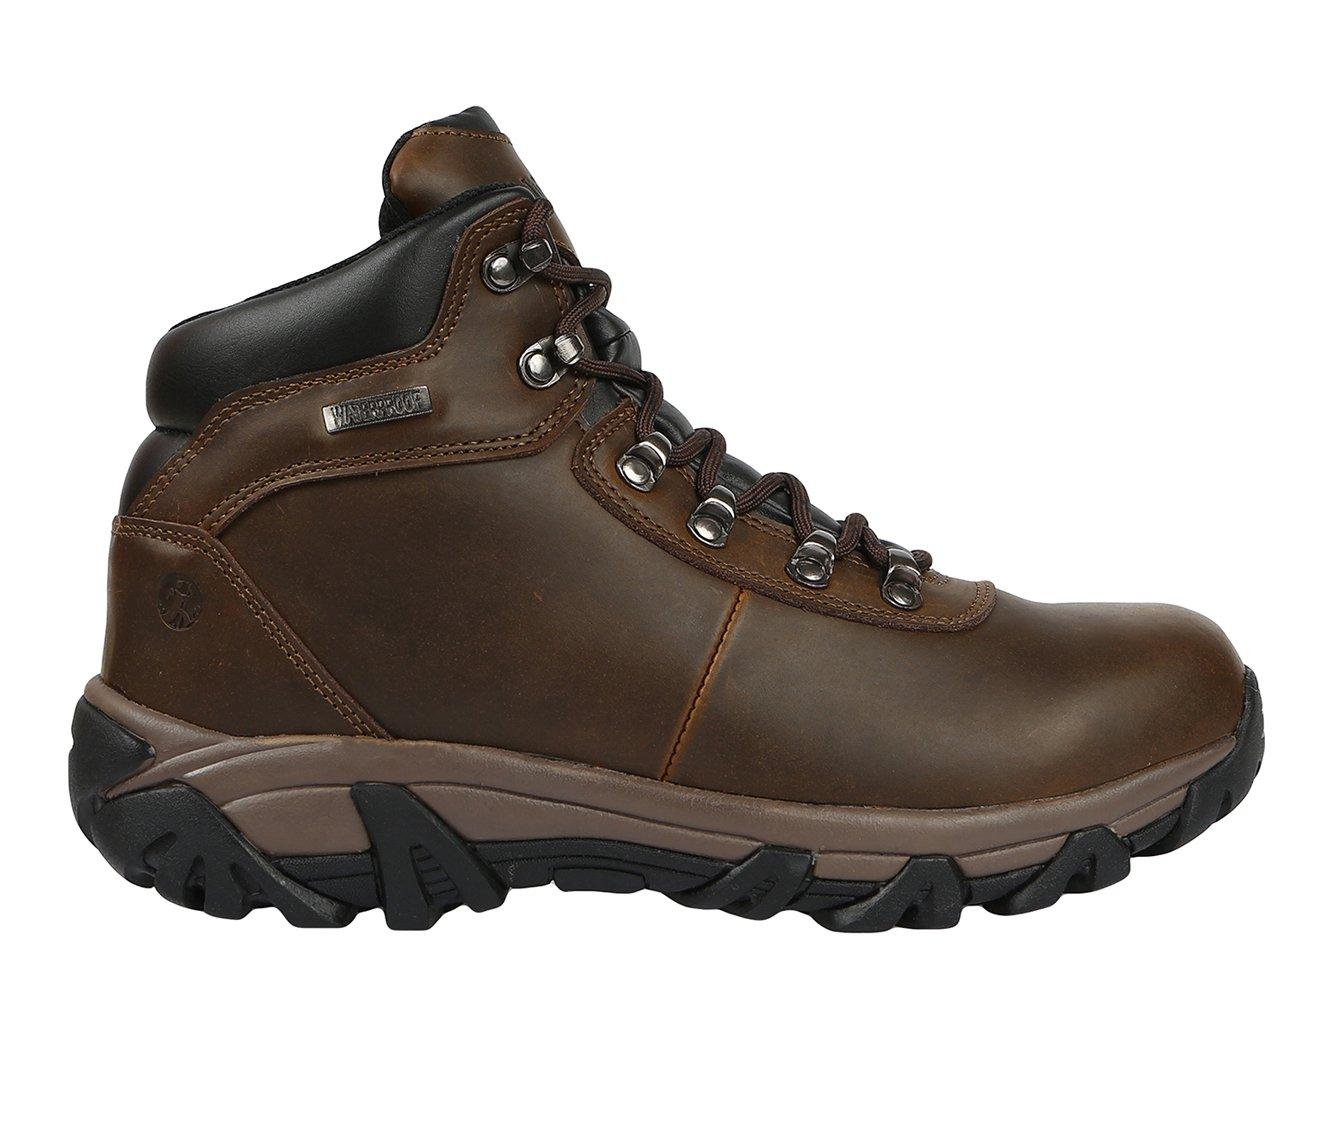 Men's Northside Vista Ridge Mid Waterproof Hiking Boots